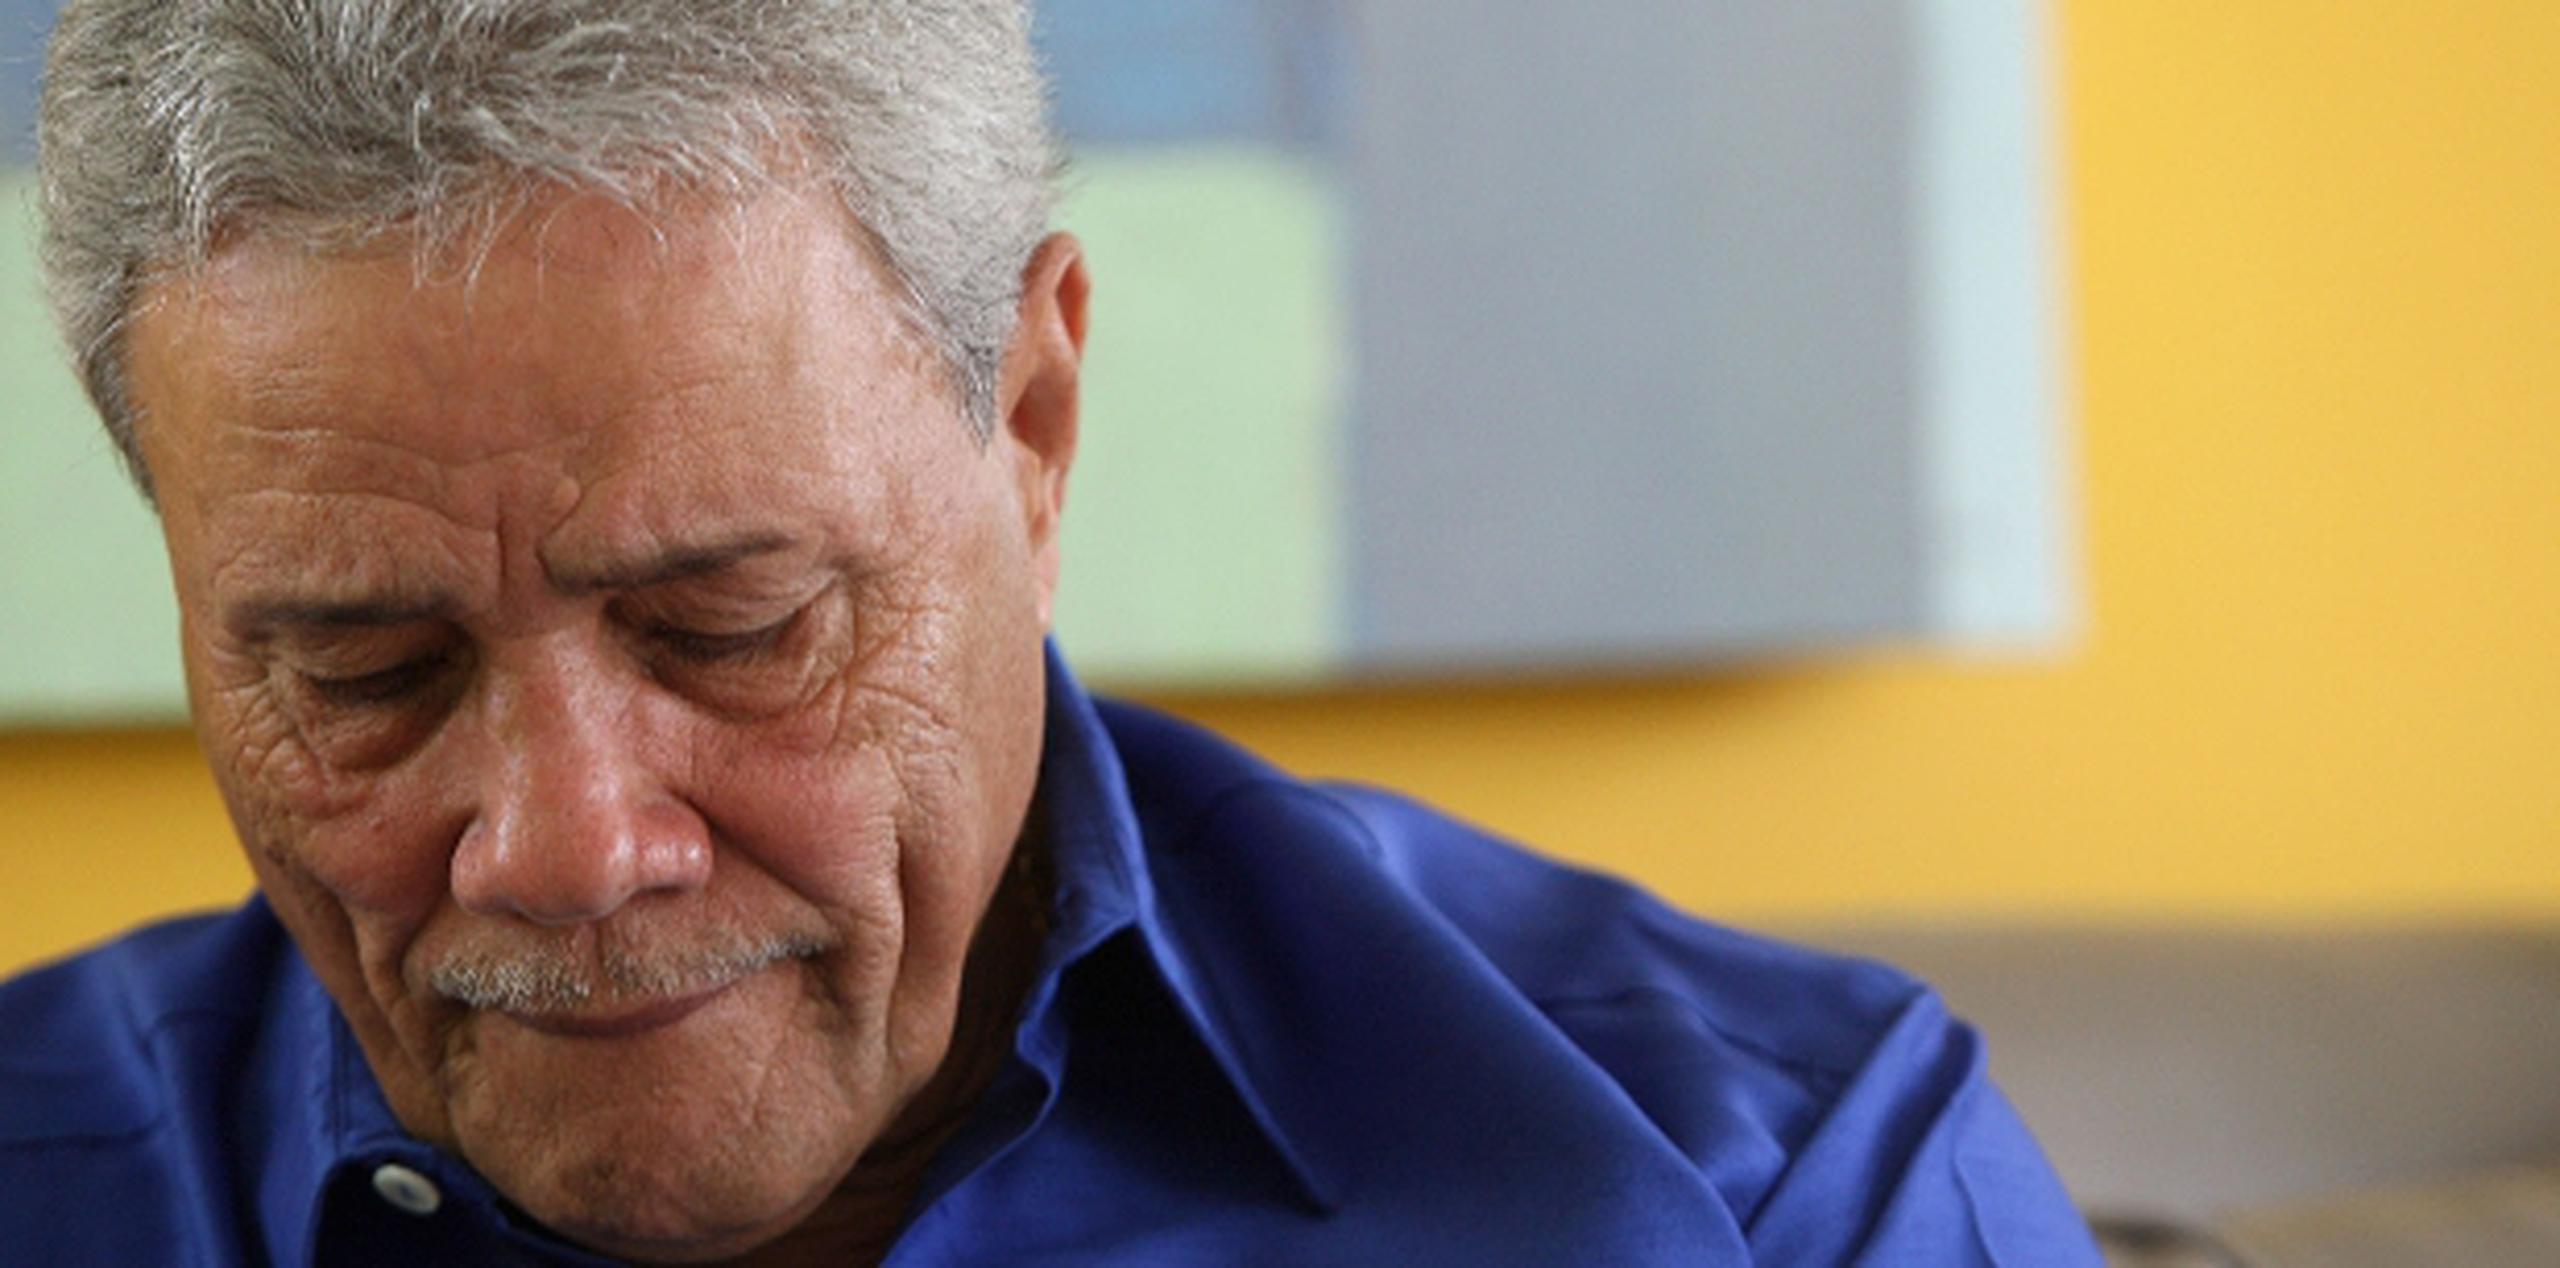 El renunciante alcalde de Canóvanas, José “Chemo” Soto, trabaja para establecer una fundación para ayudar a las personas necesitas. Confía en recibir ayuda de las empresas privadas. (Archivo)